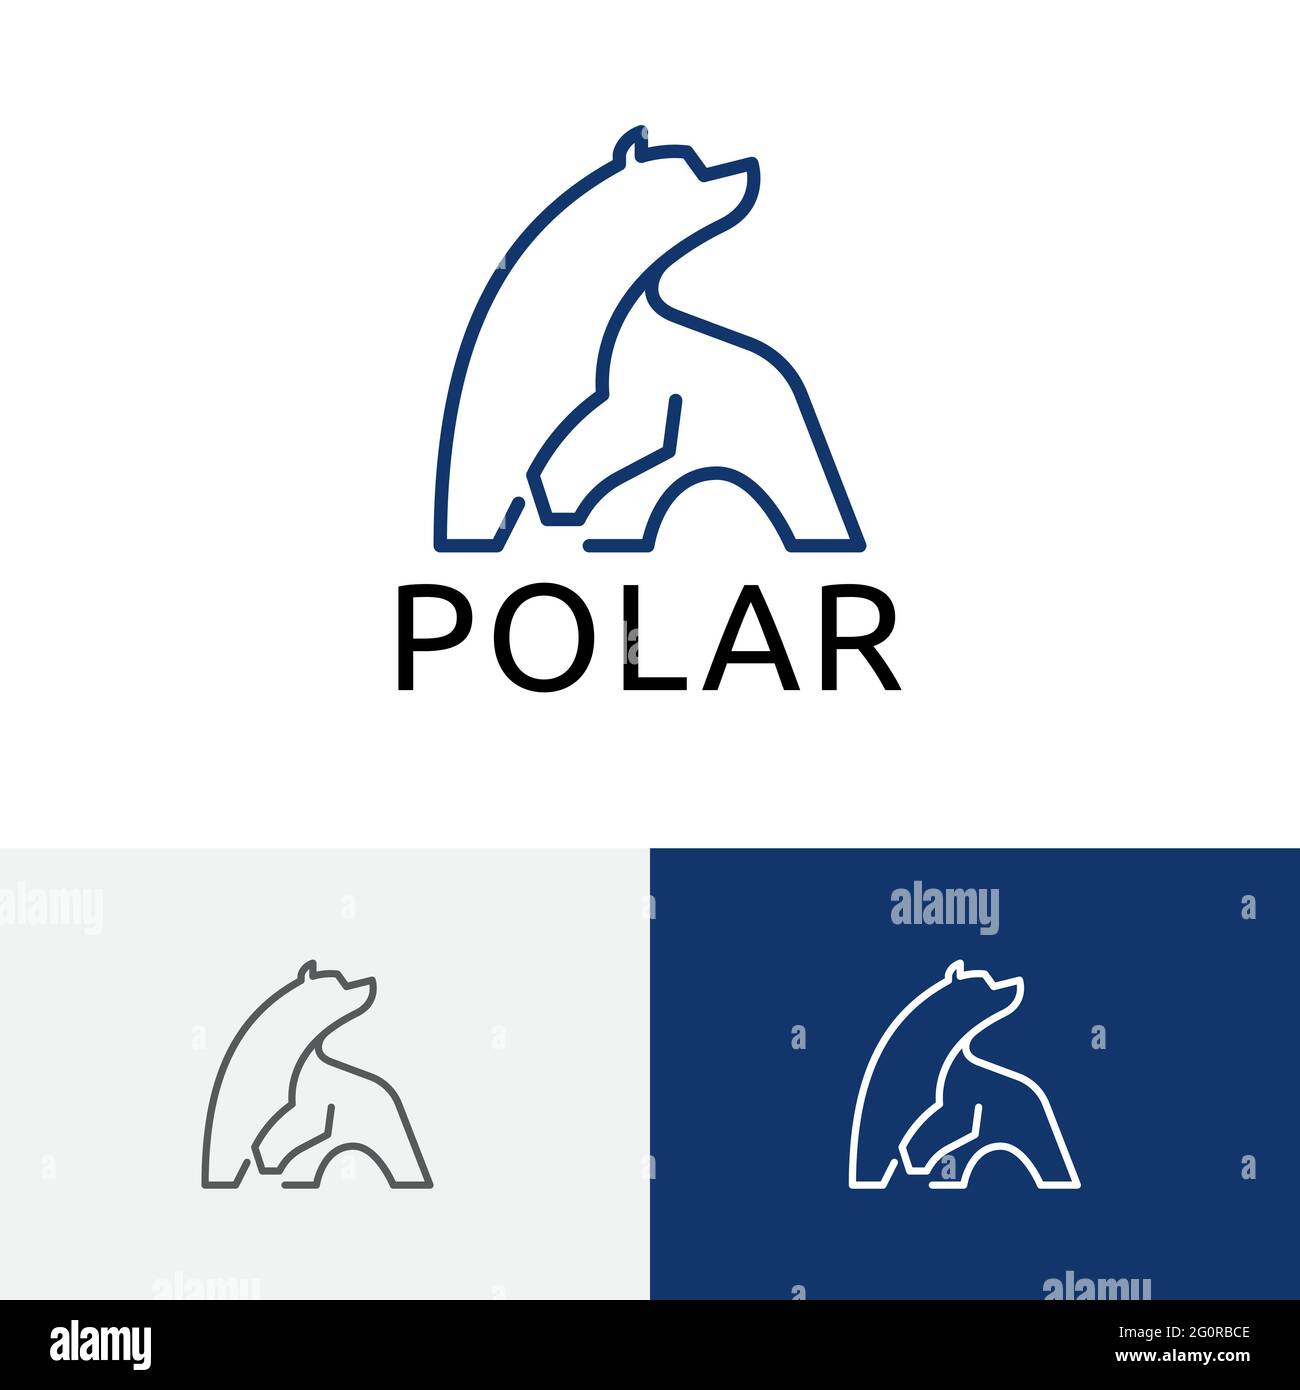 Big Polar Bear Cool Ice Abstract Line Logo Stock Vector